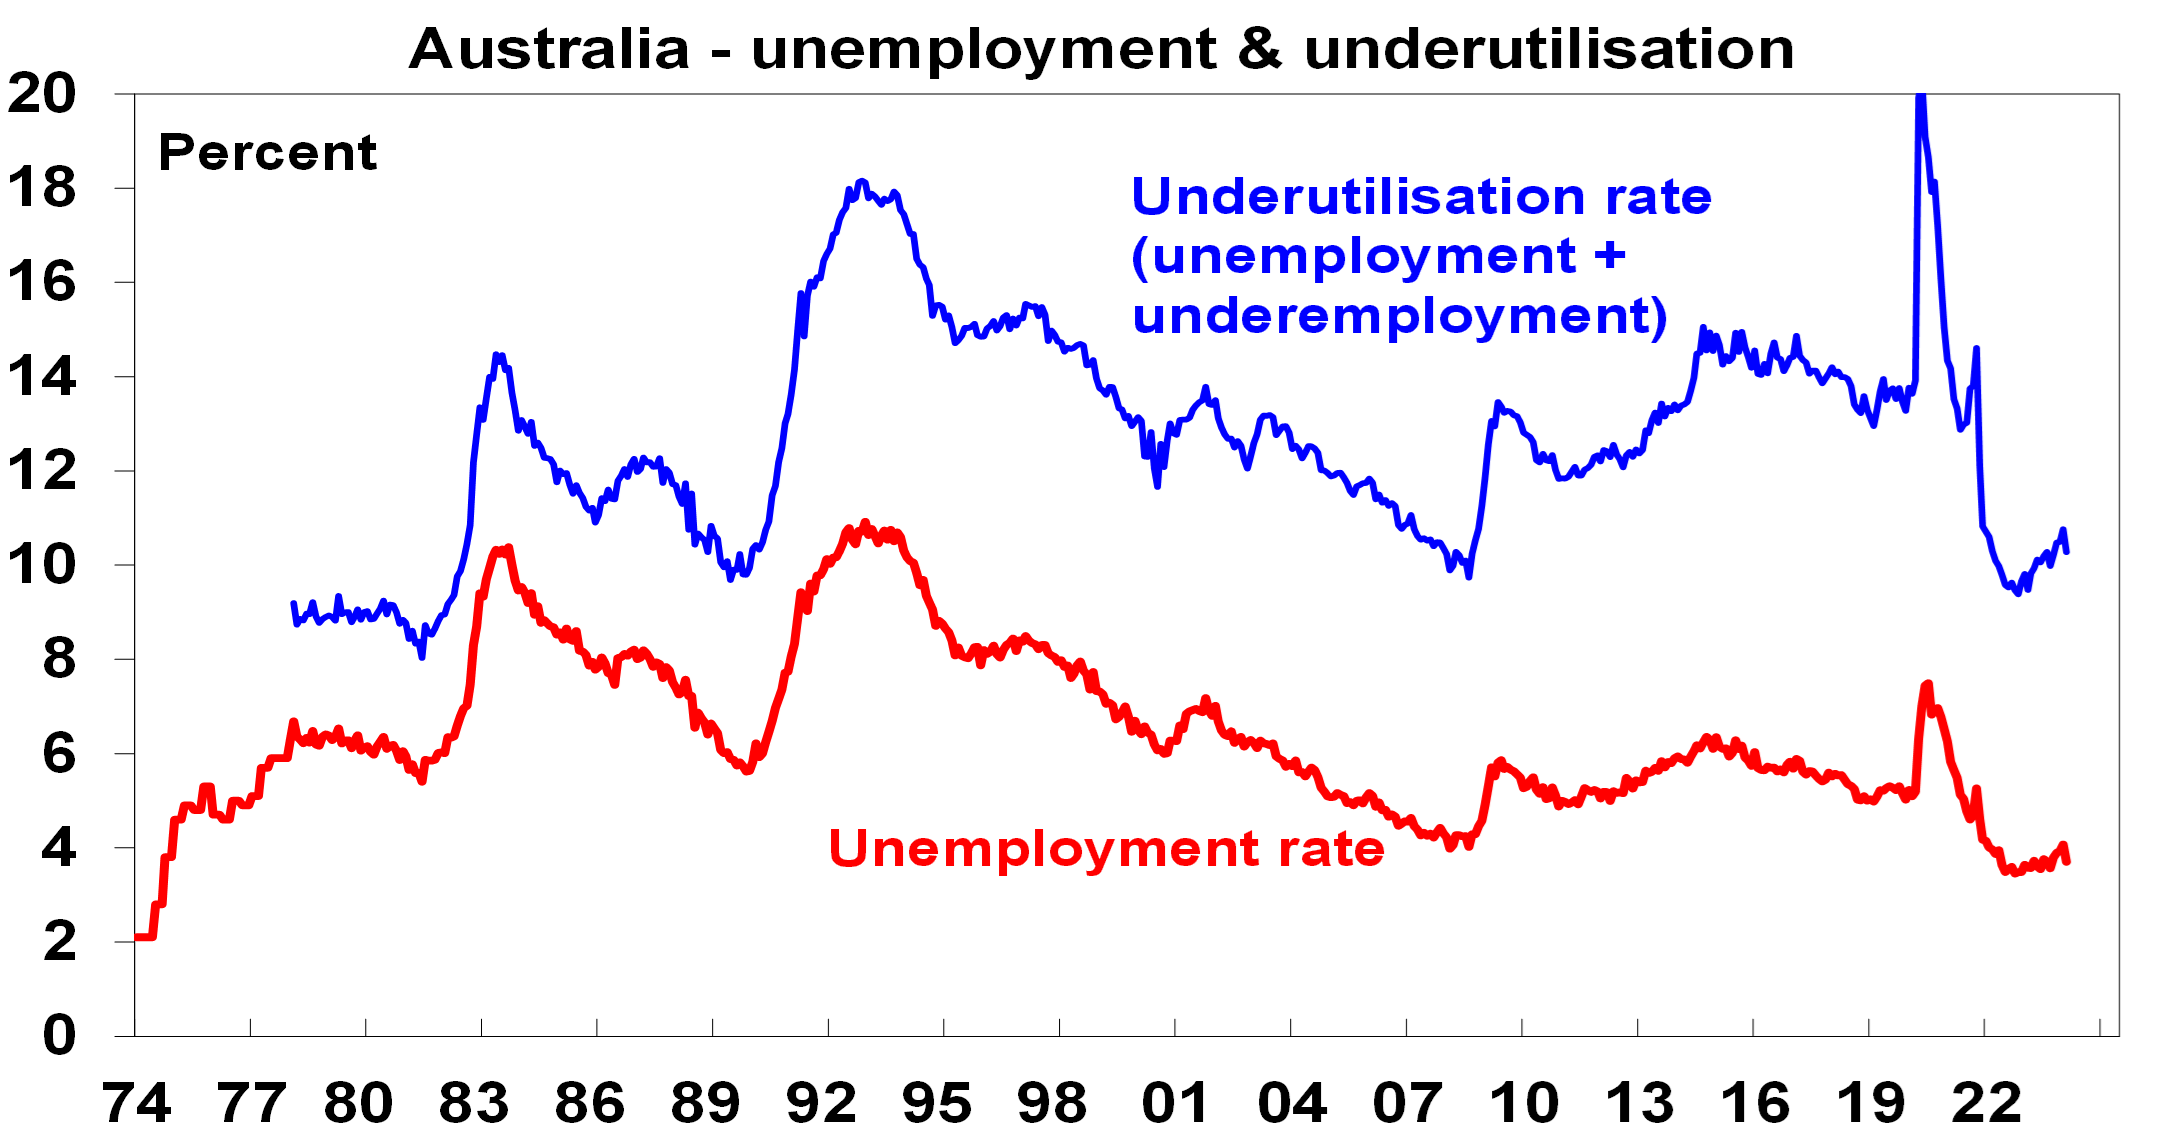 Australia - unemployment and underutilisation